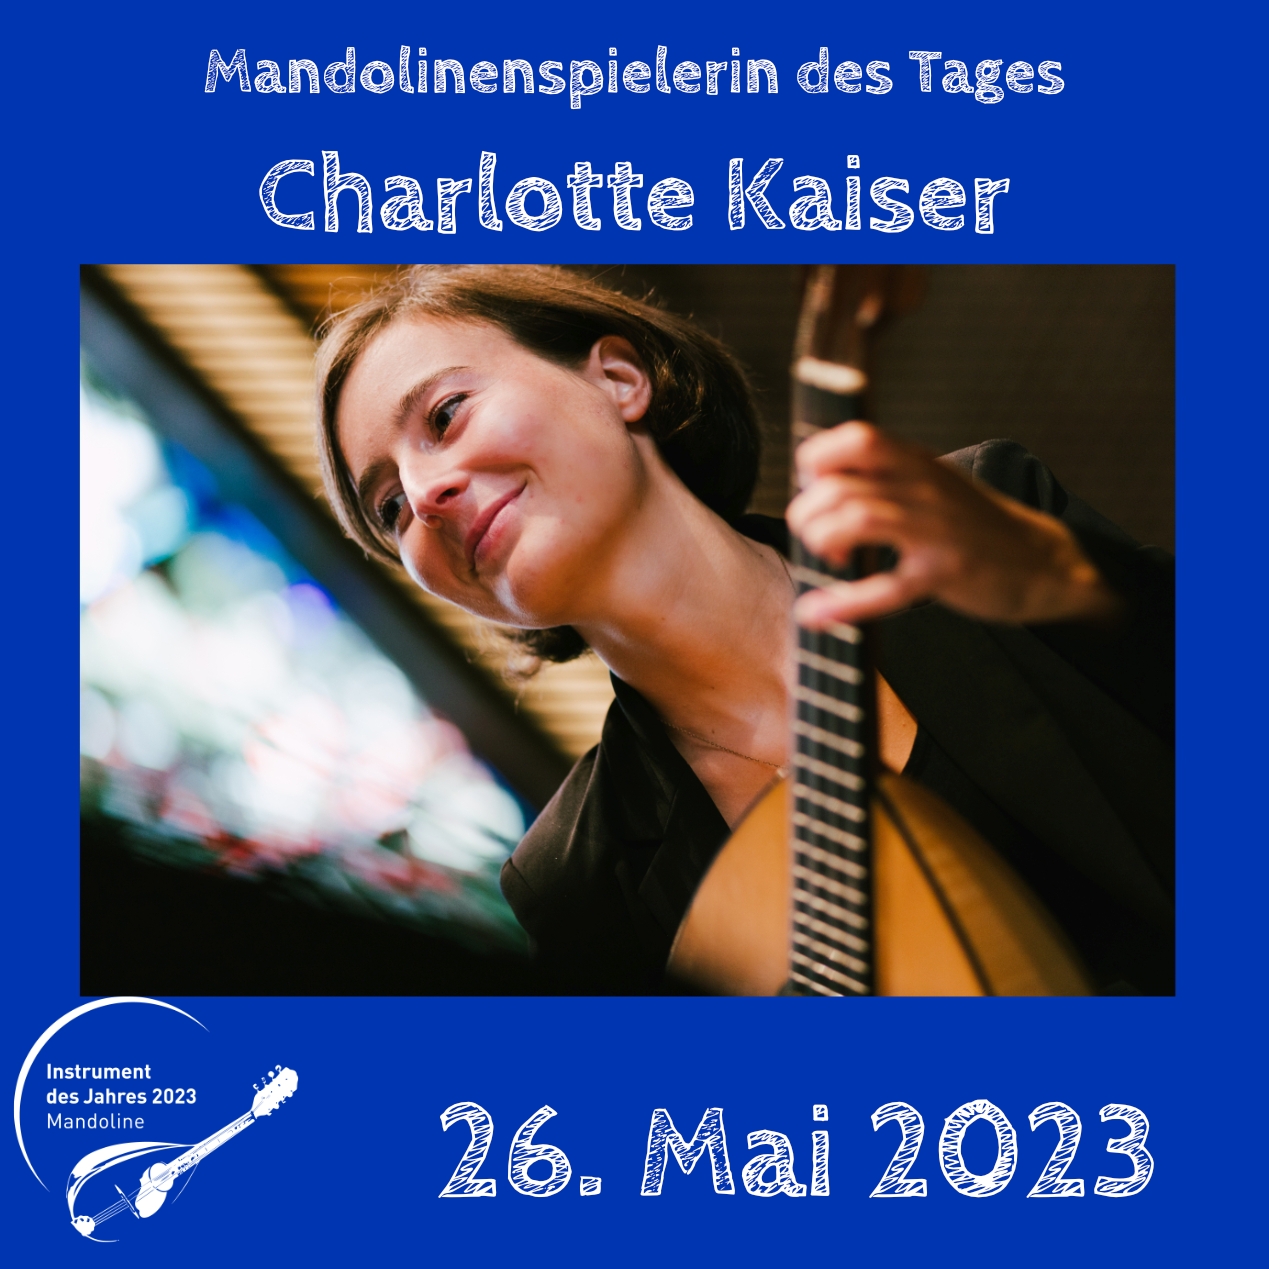 Charlotte Kaiser Mandoline Instrument des Jahres 2023 Mandolinenspieler Mandolinenspielerin des Tages